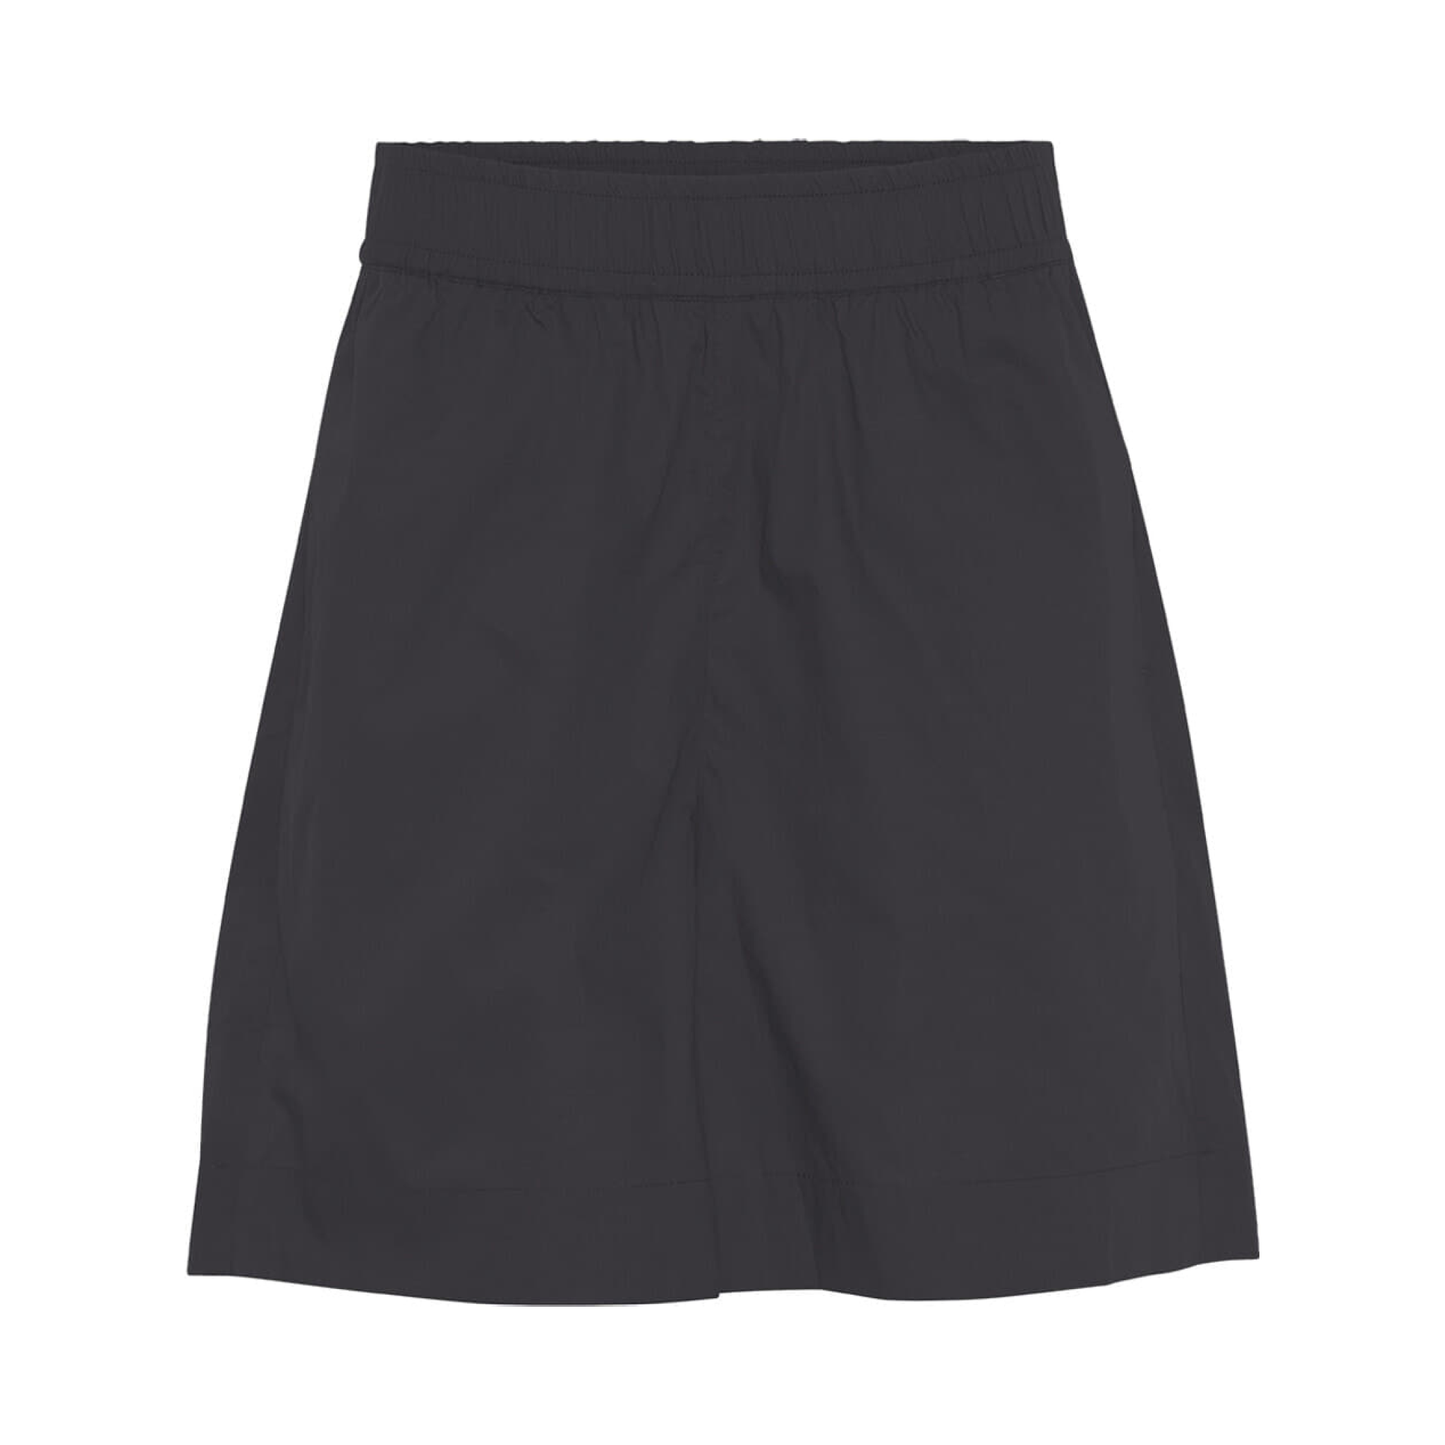 Sydney Shorts, Black